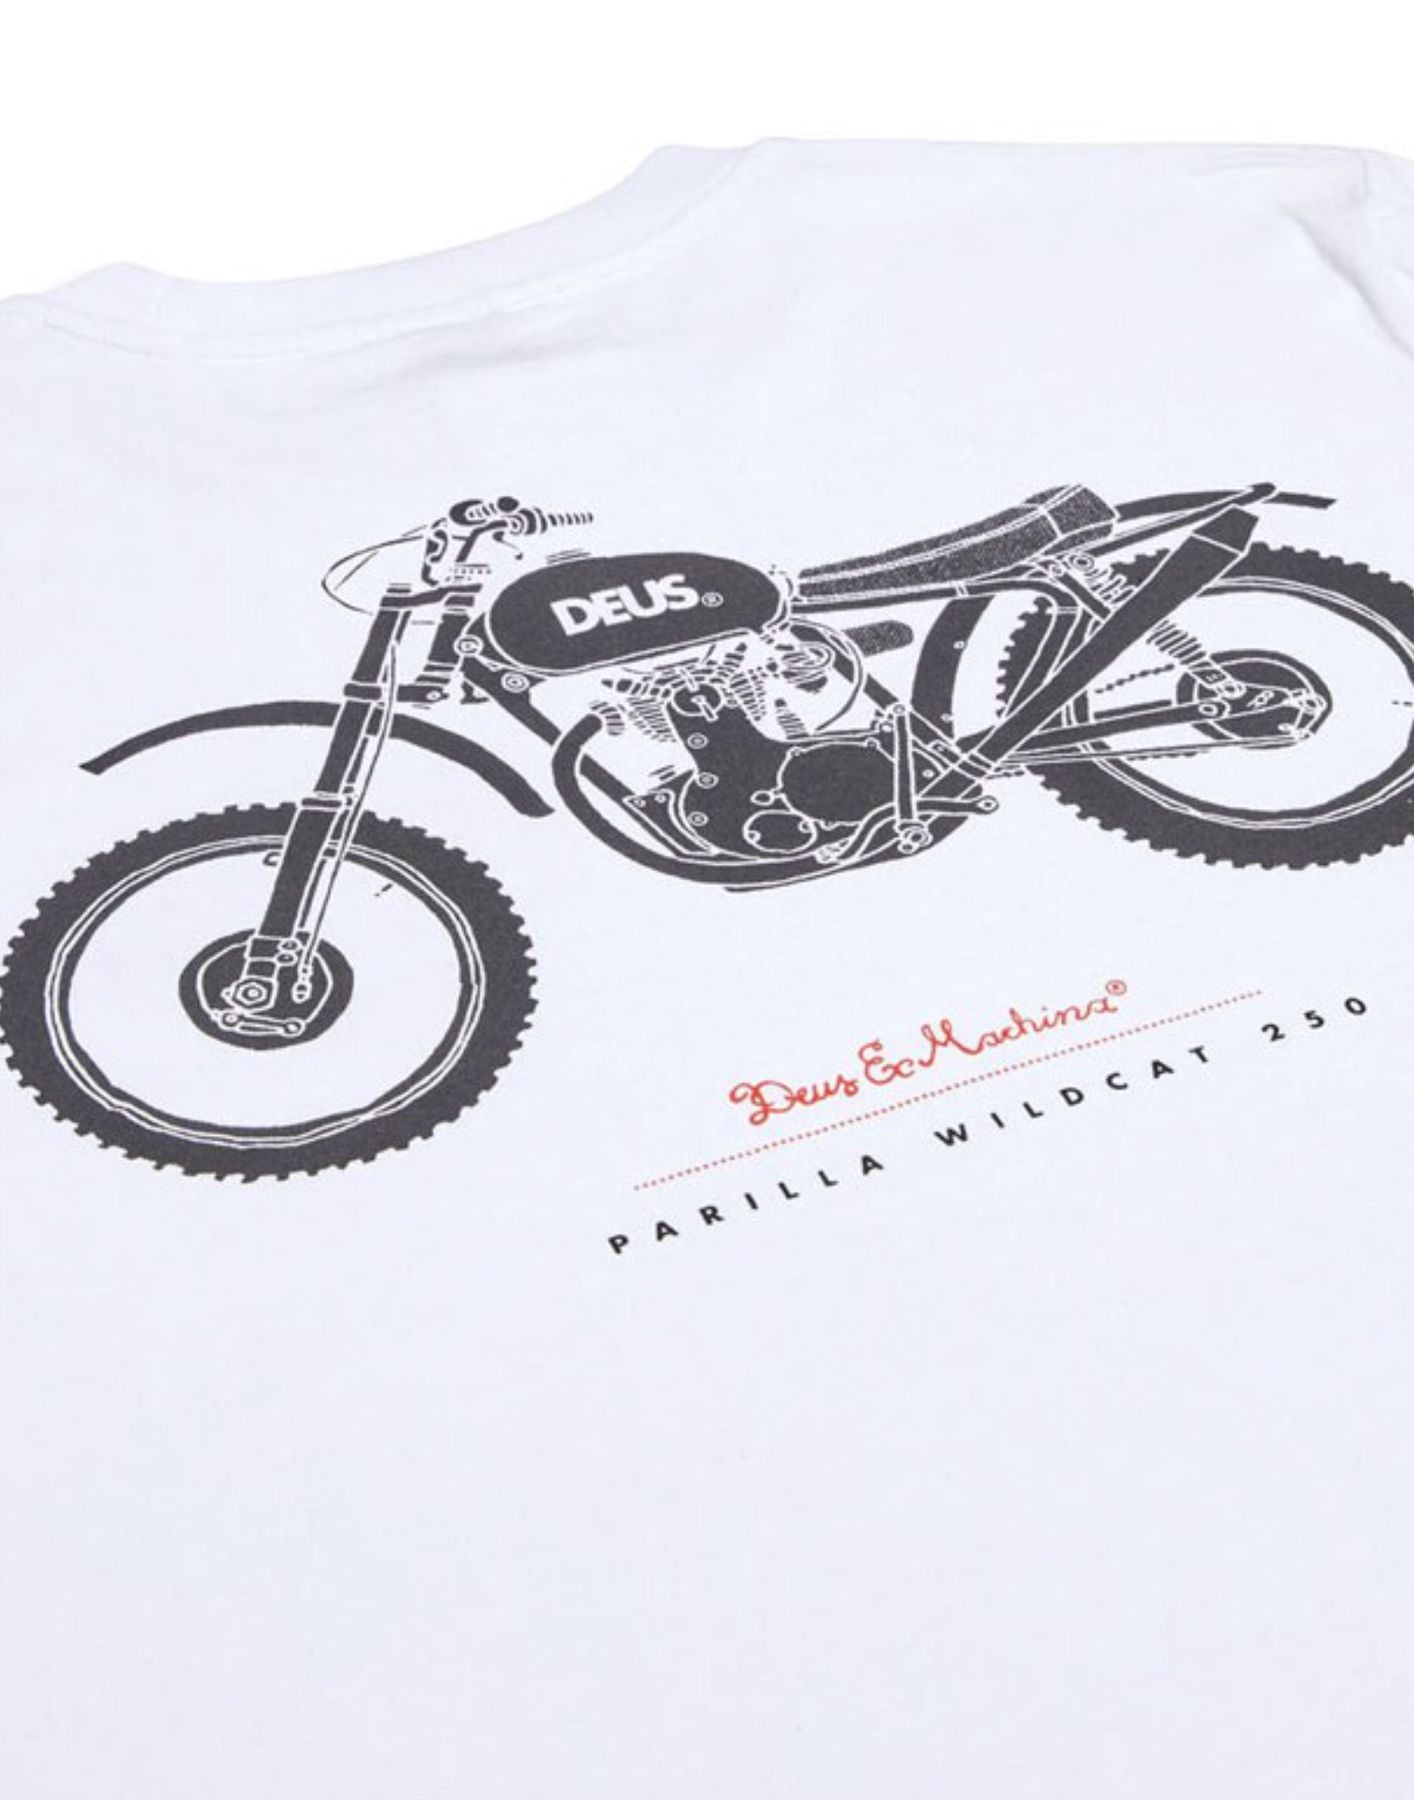 T-shirt per uomo dmp241438a bianco Deus Ex Machina